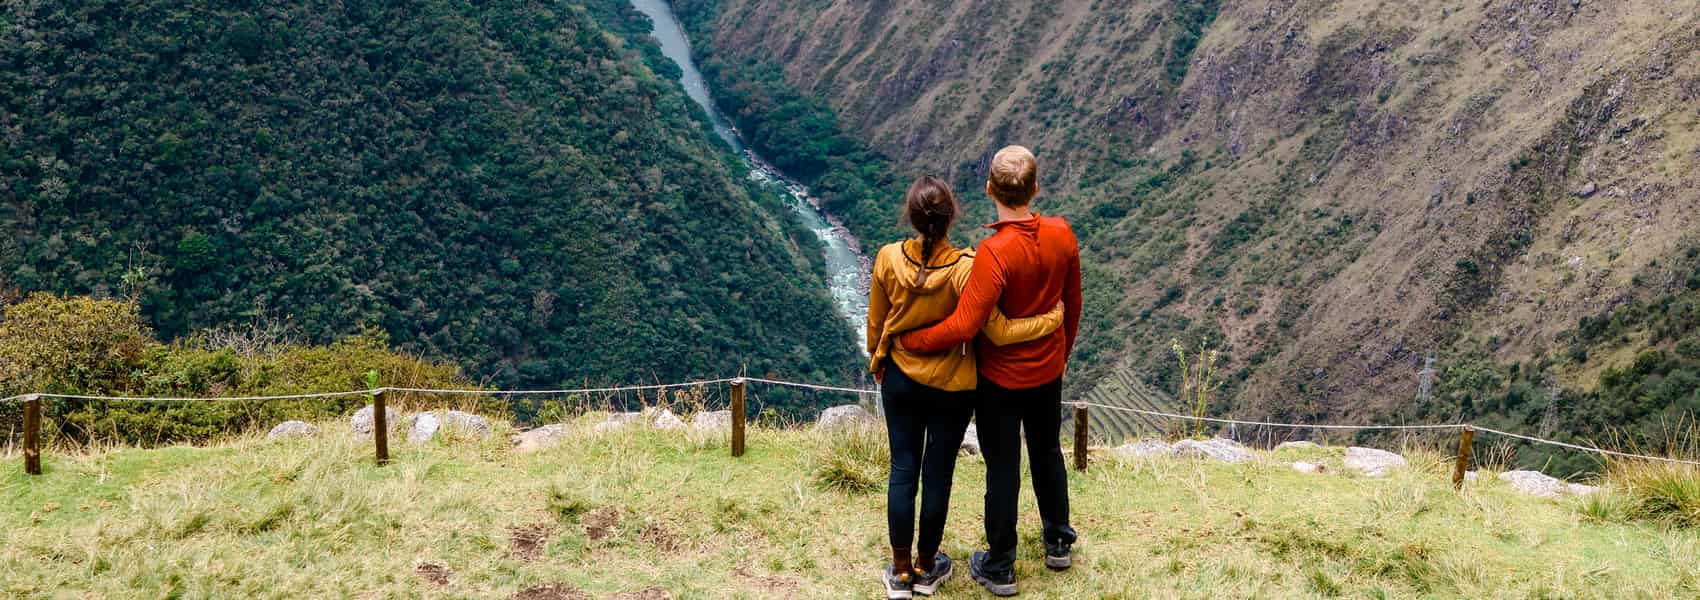 Inca Trail Hike to Machu Picchu | Ultimate Trekking